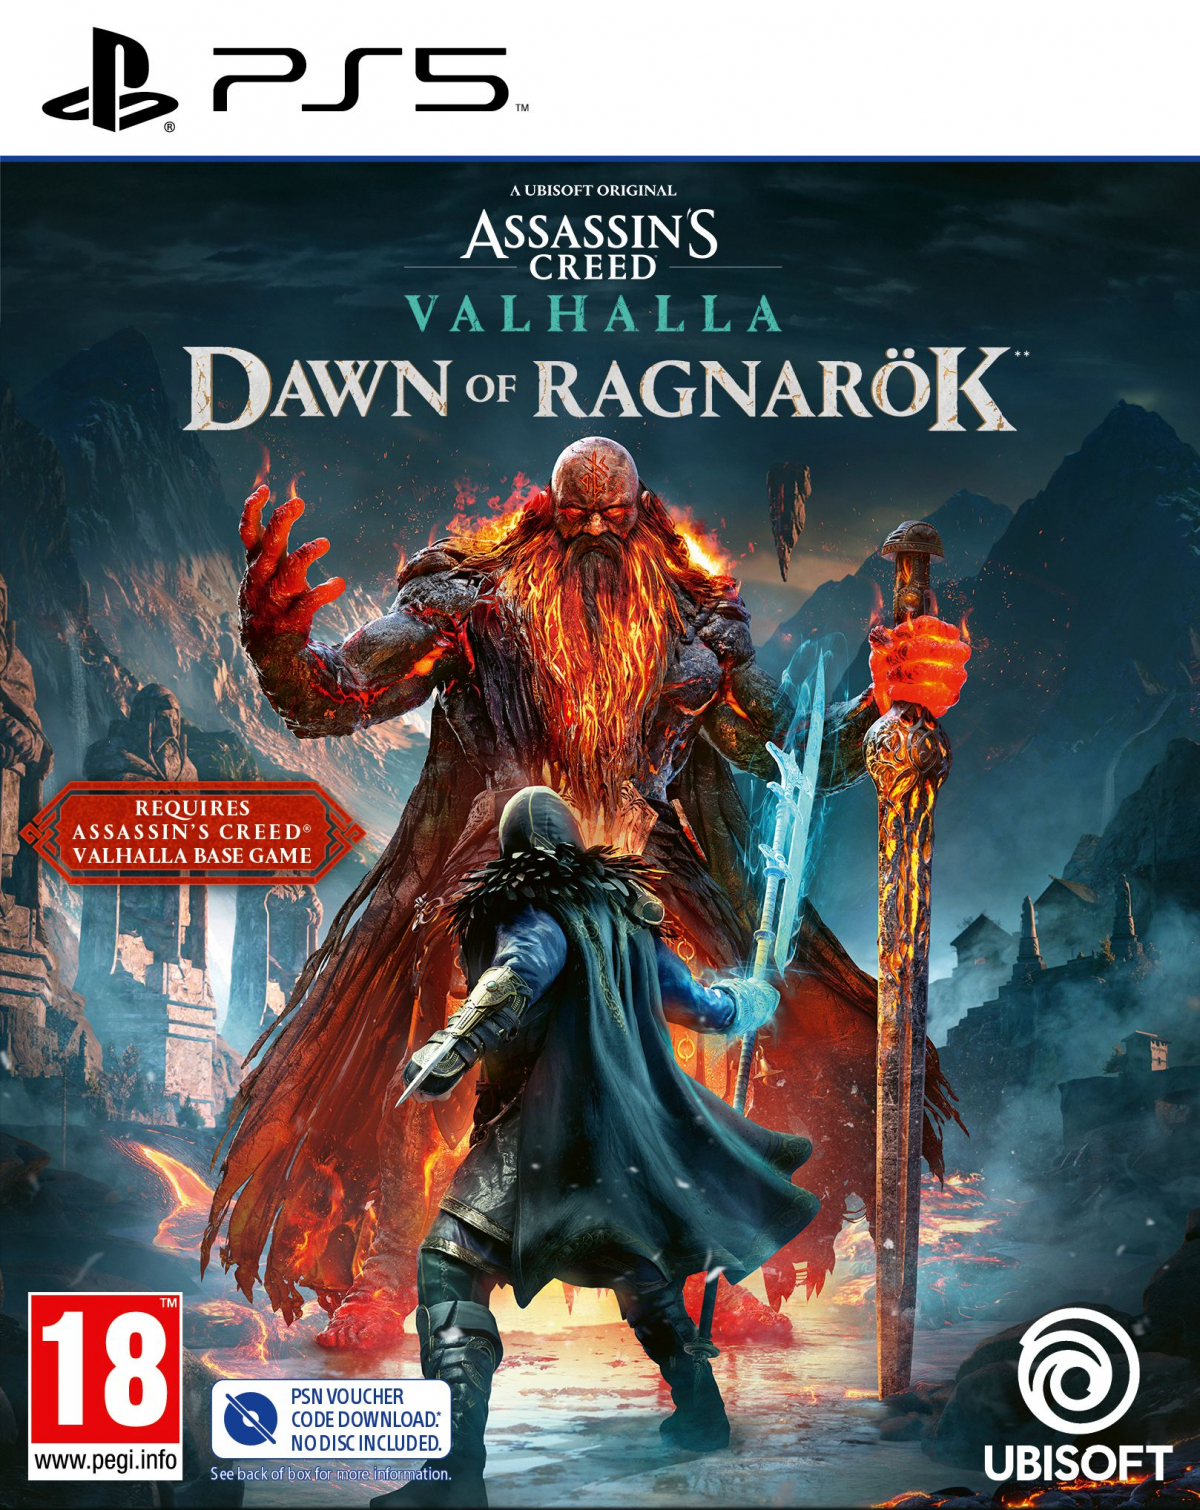 PS5 Assassins Creed Valhalla Dawn of Ragnarök